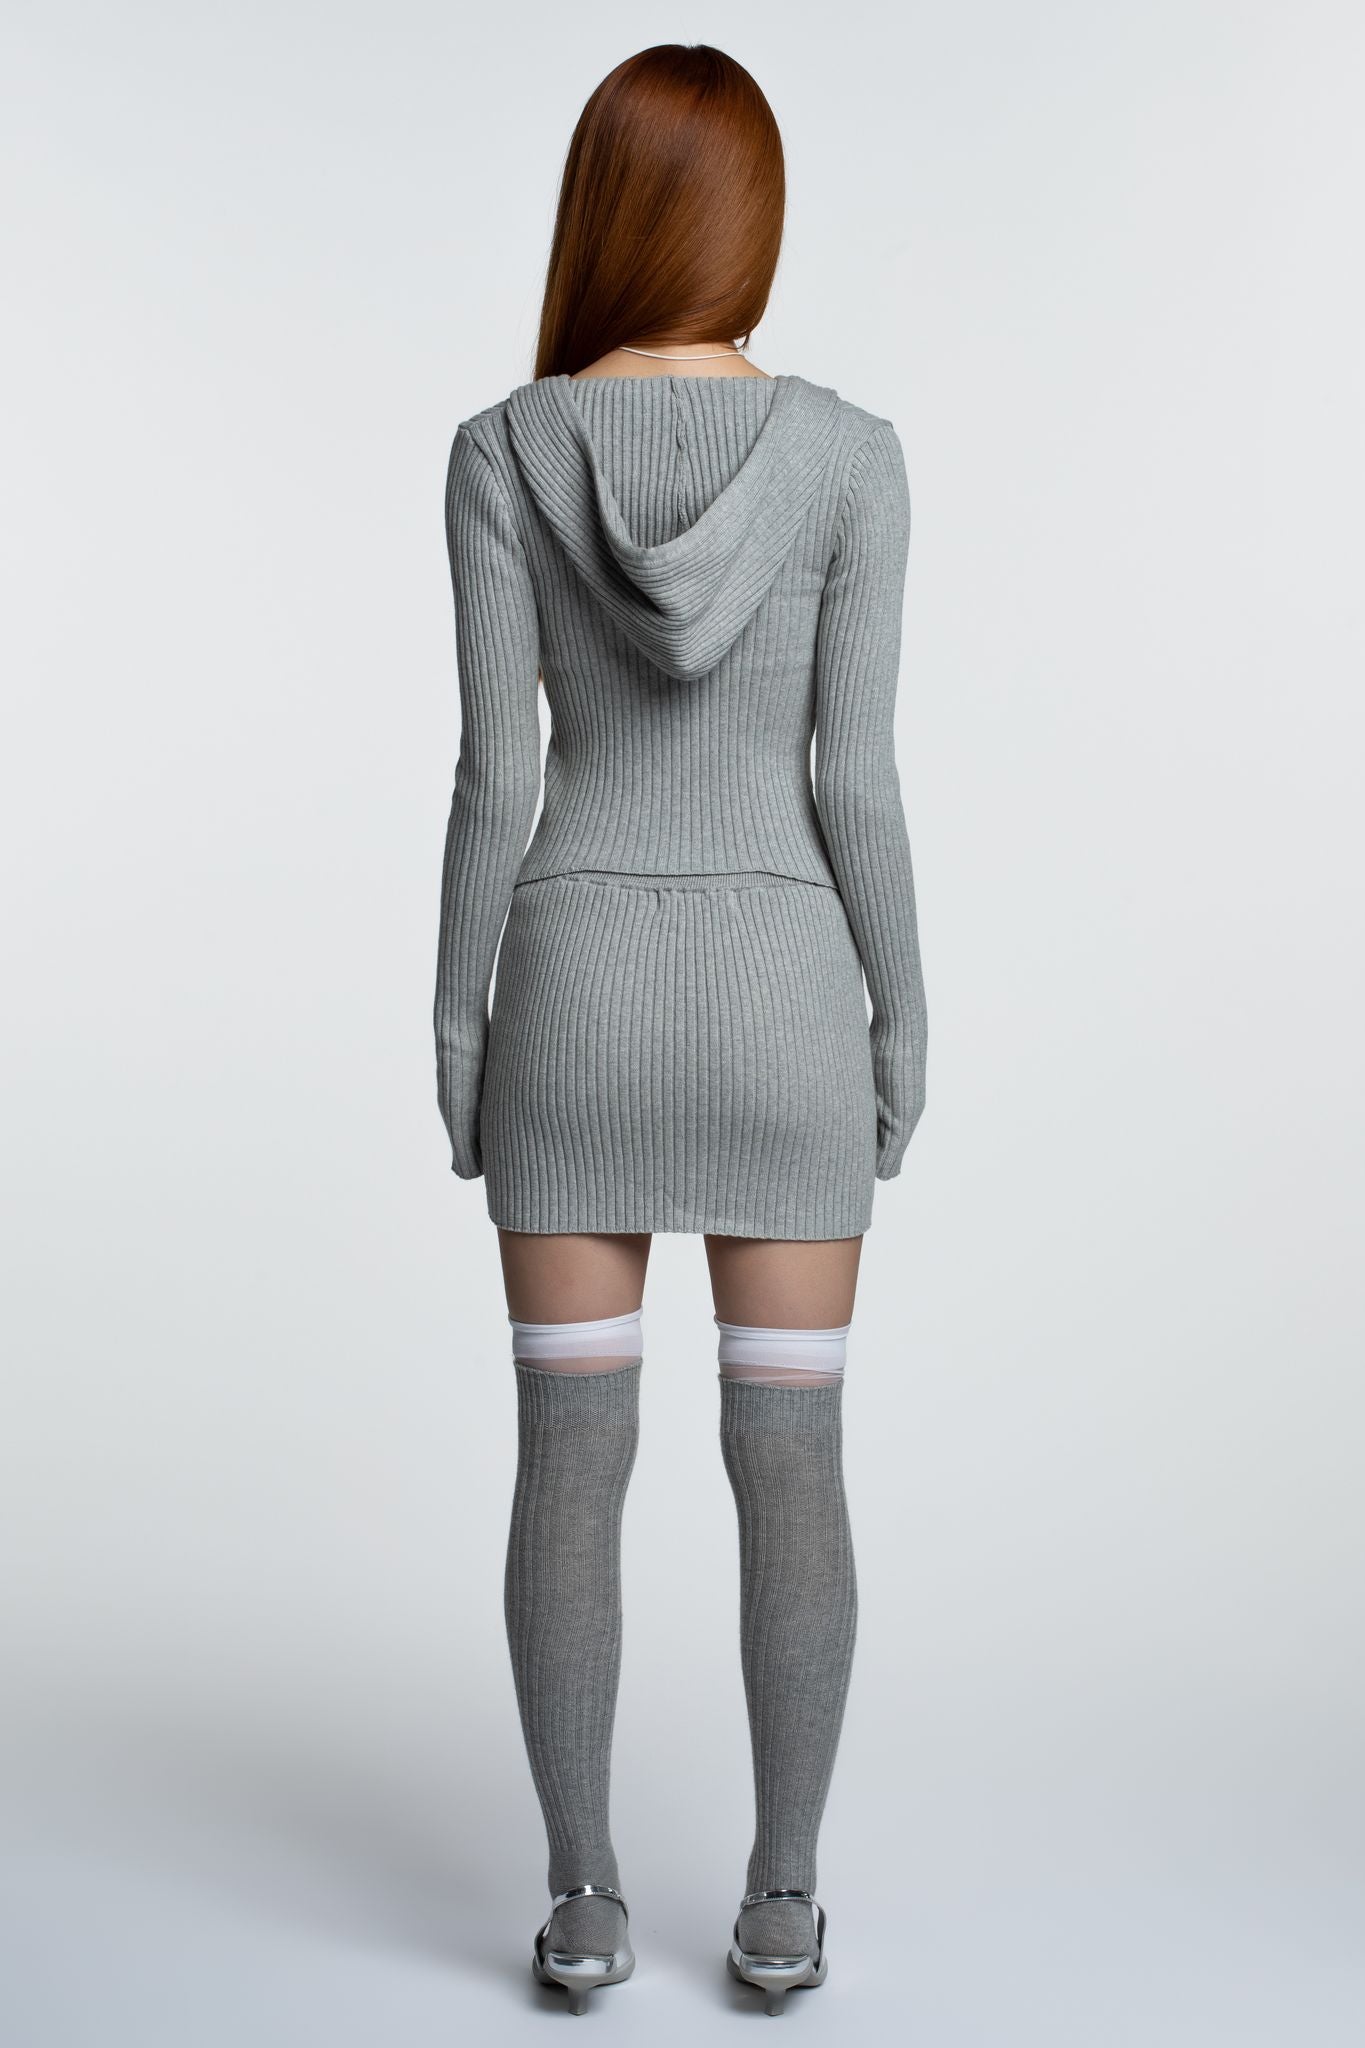 
                  
                    Kuma Skirt - Grey
                  
                